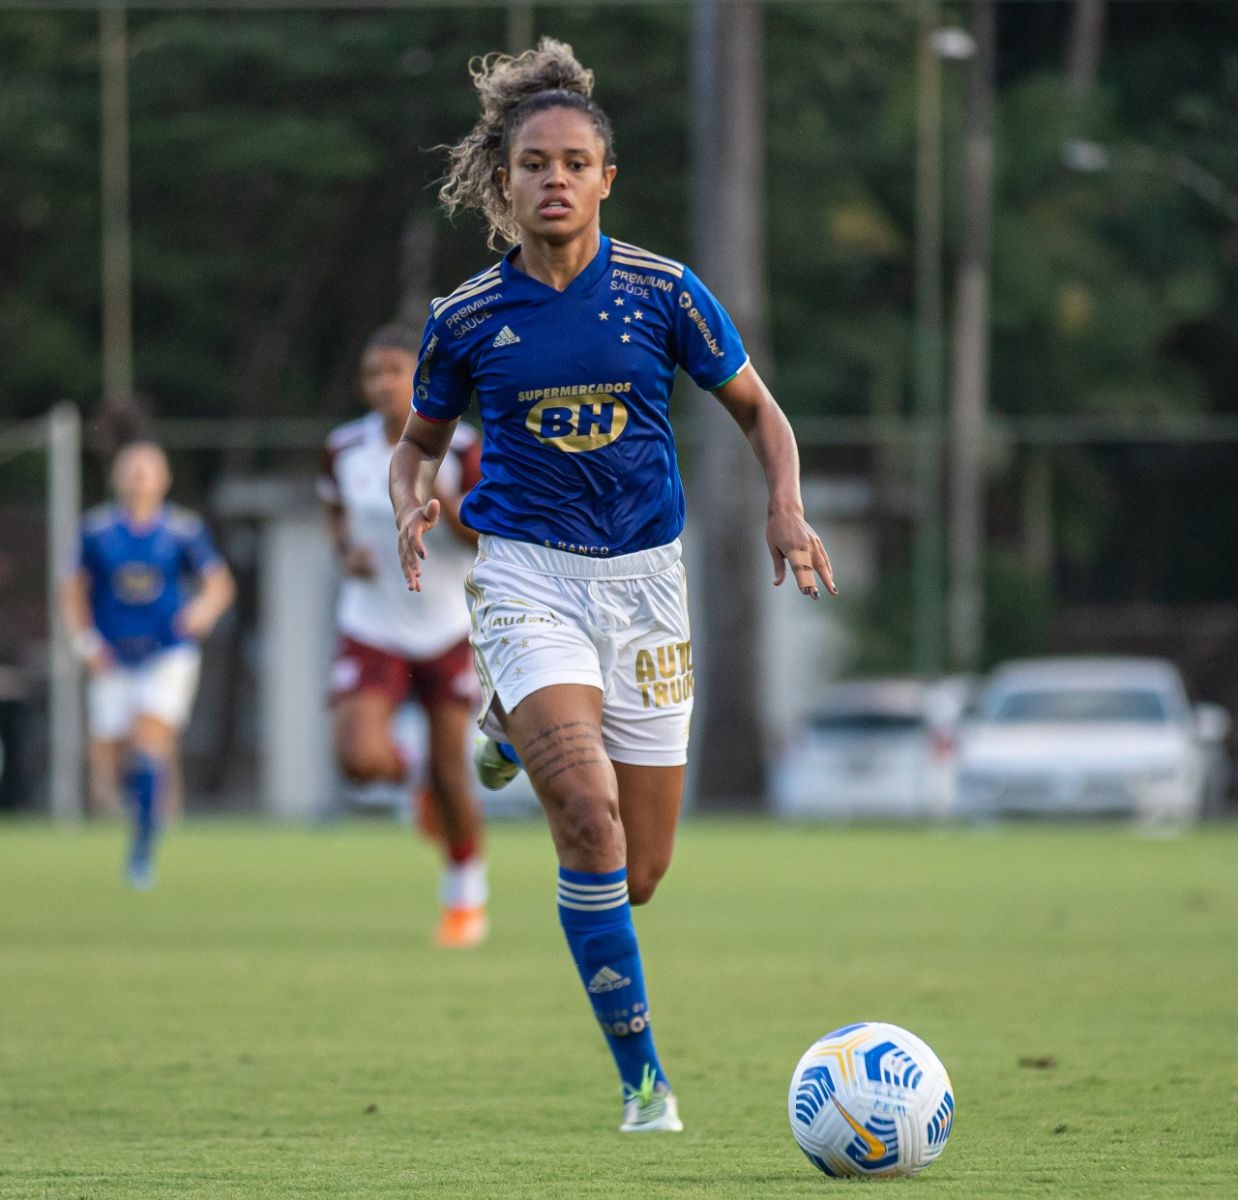 Atacante cabulosa Mariana Santos renova contrato com o Cruzeiro para 2022 e é emprestada para o Besiktas